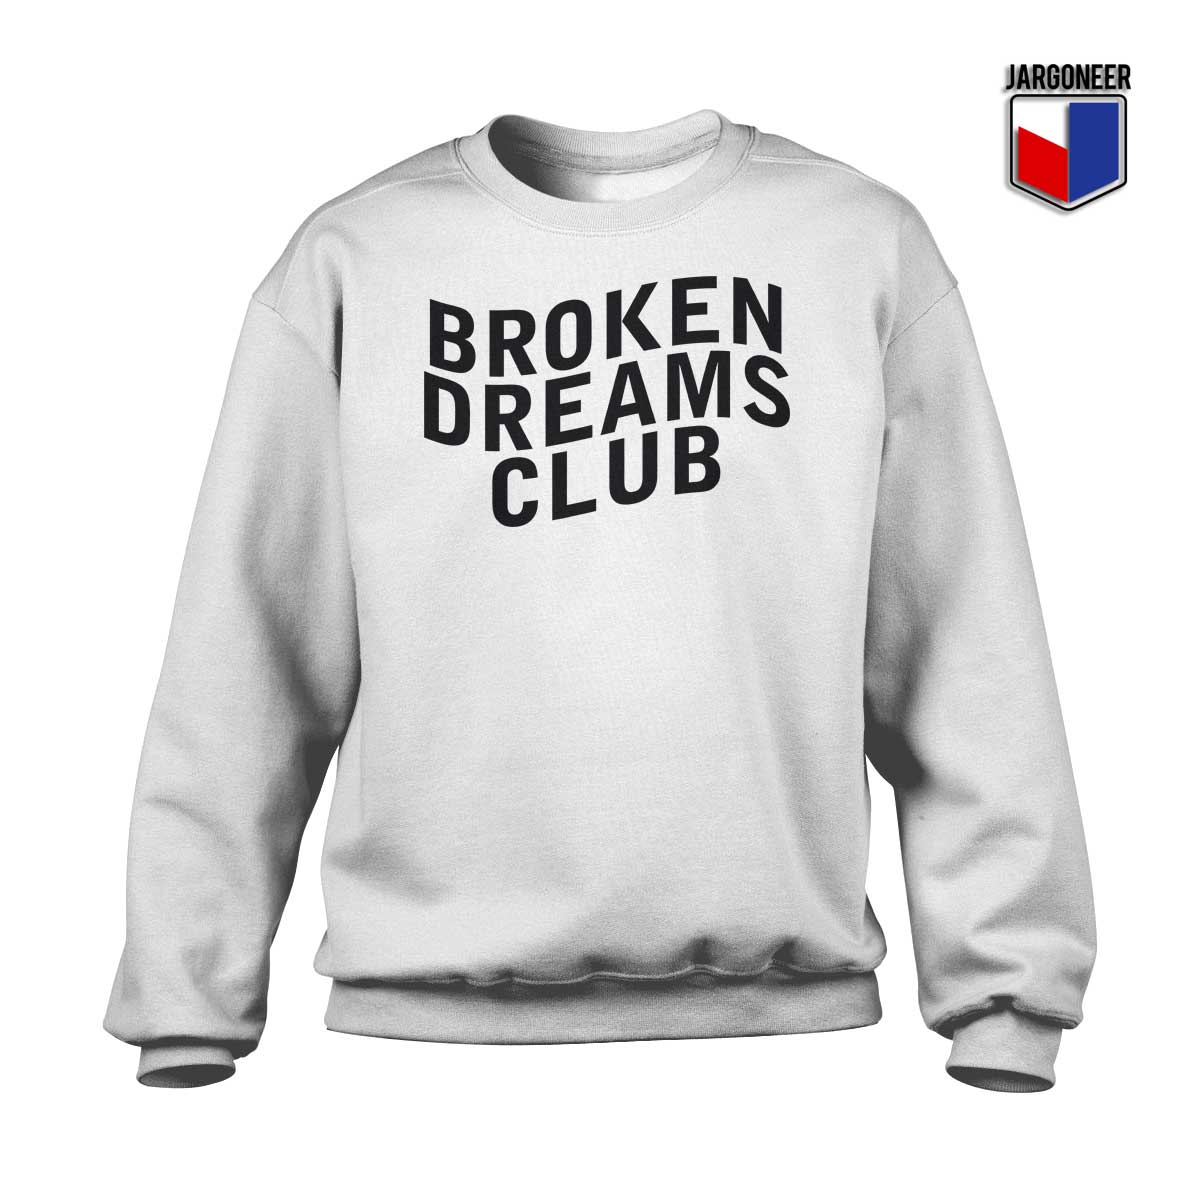 Broken Dreams Club 1 - Shop Unique Graphic Cool Shirt Designs